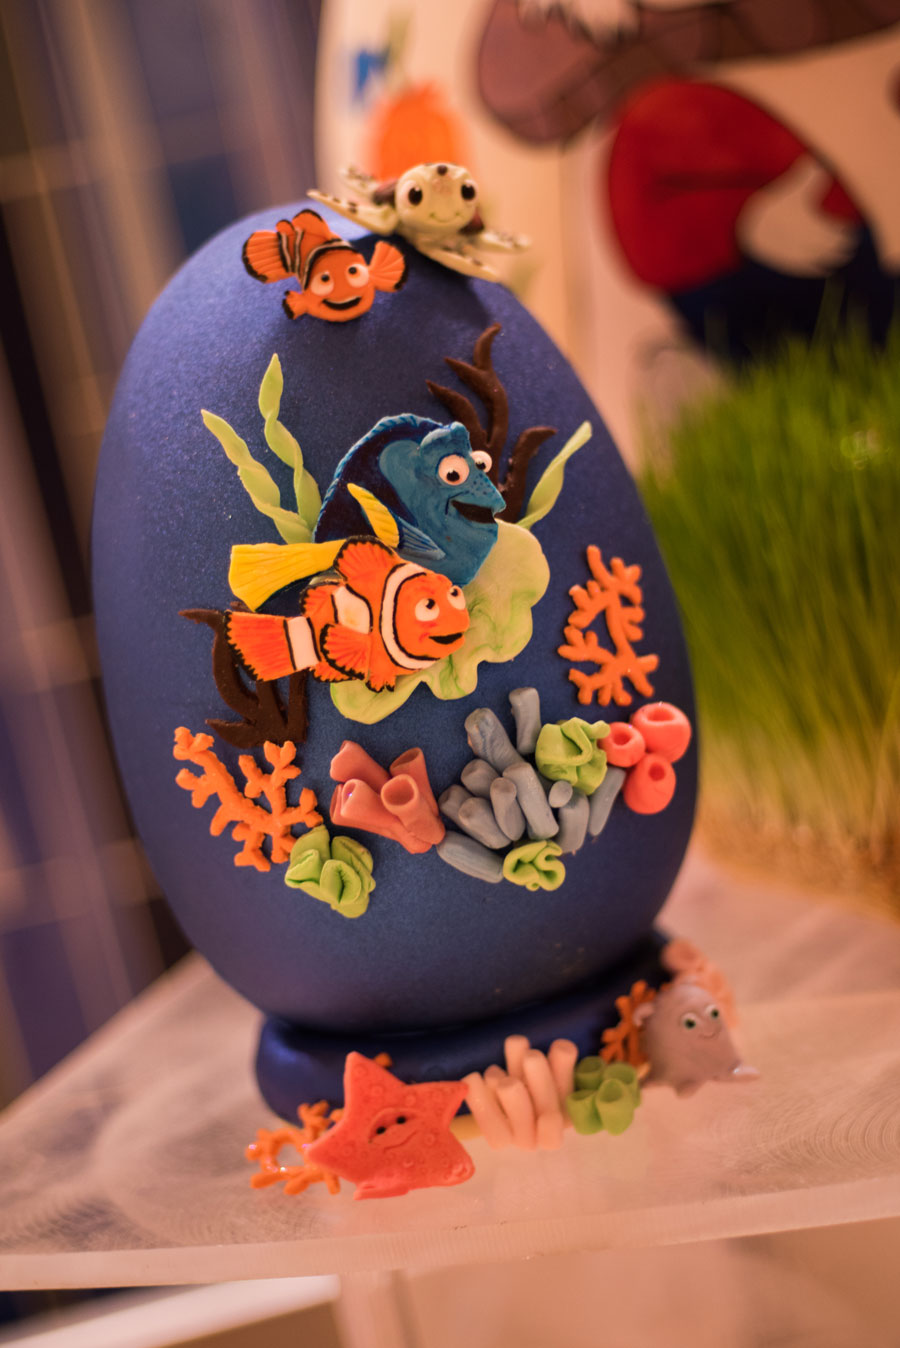 Easter Egg Displays At the Walt Disney World Resort